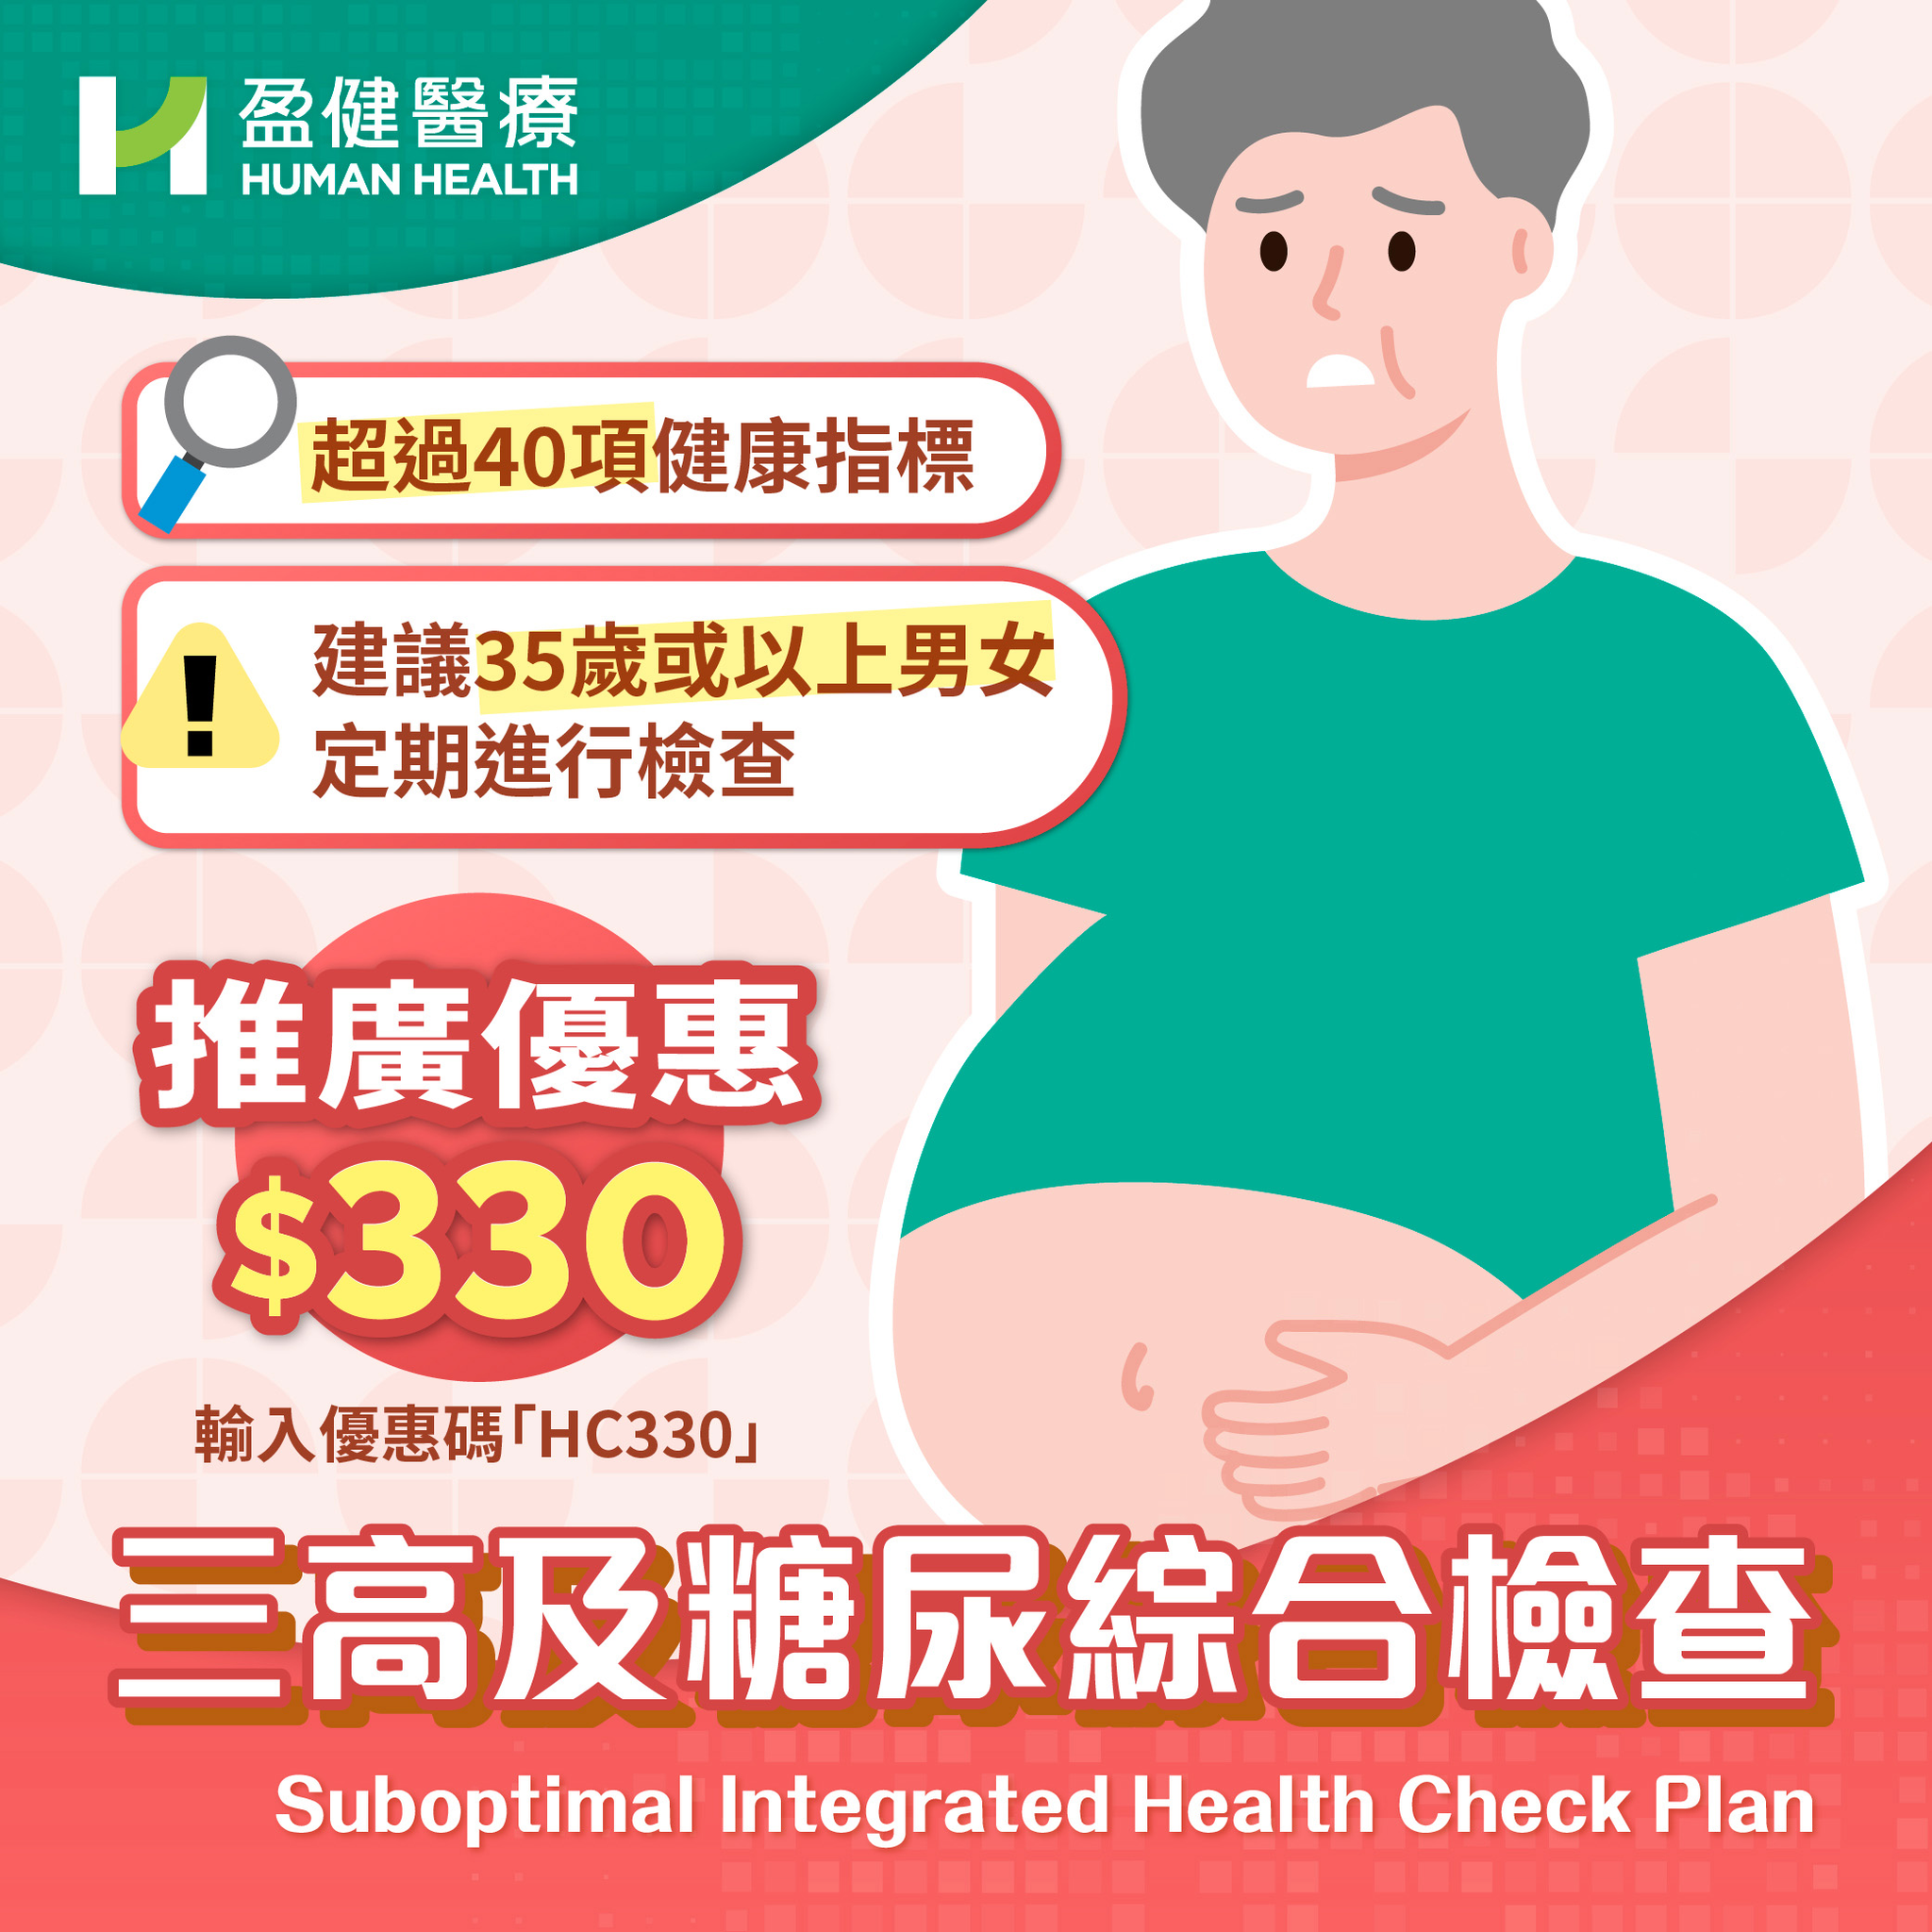 Suboptimal Integrated Health Check Plan (HH031 )